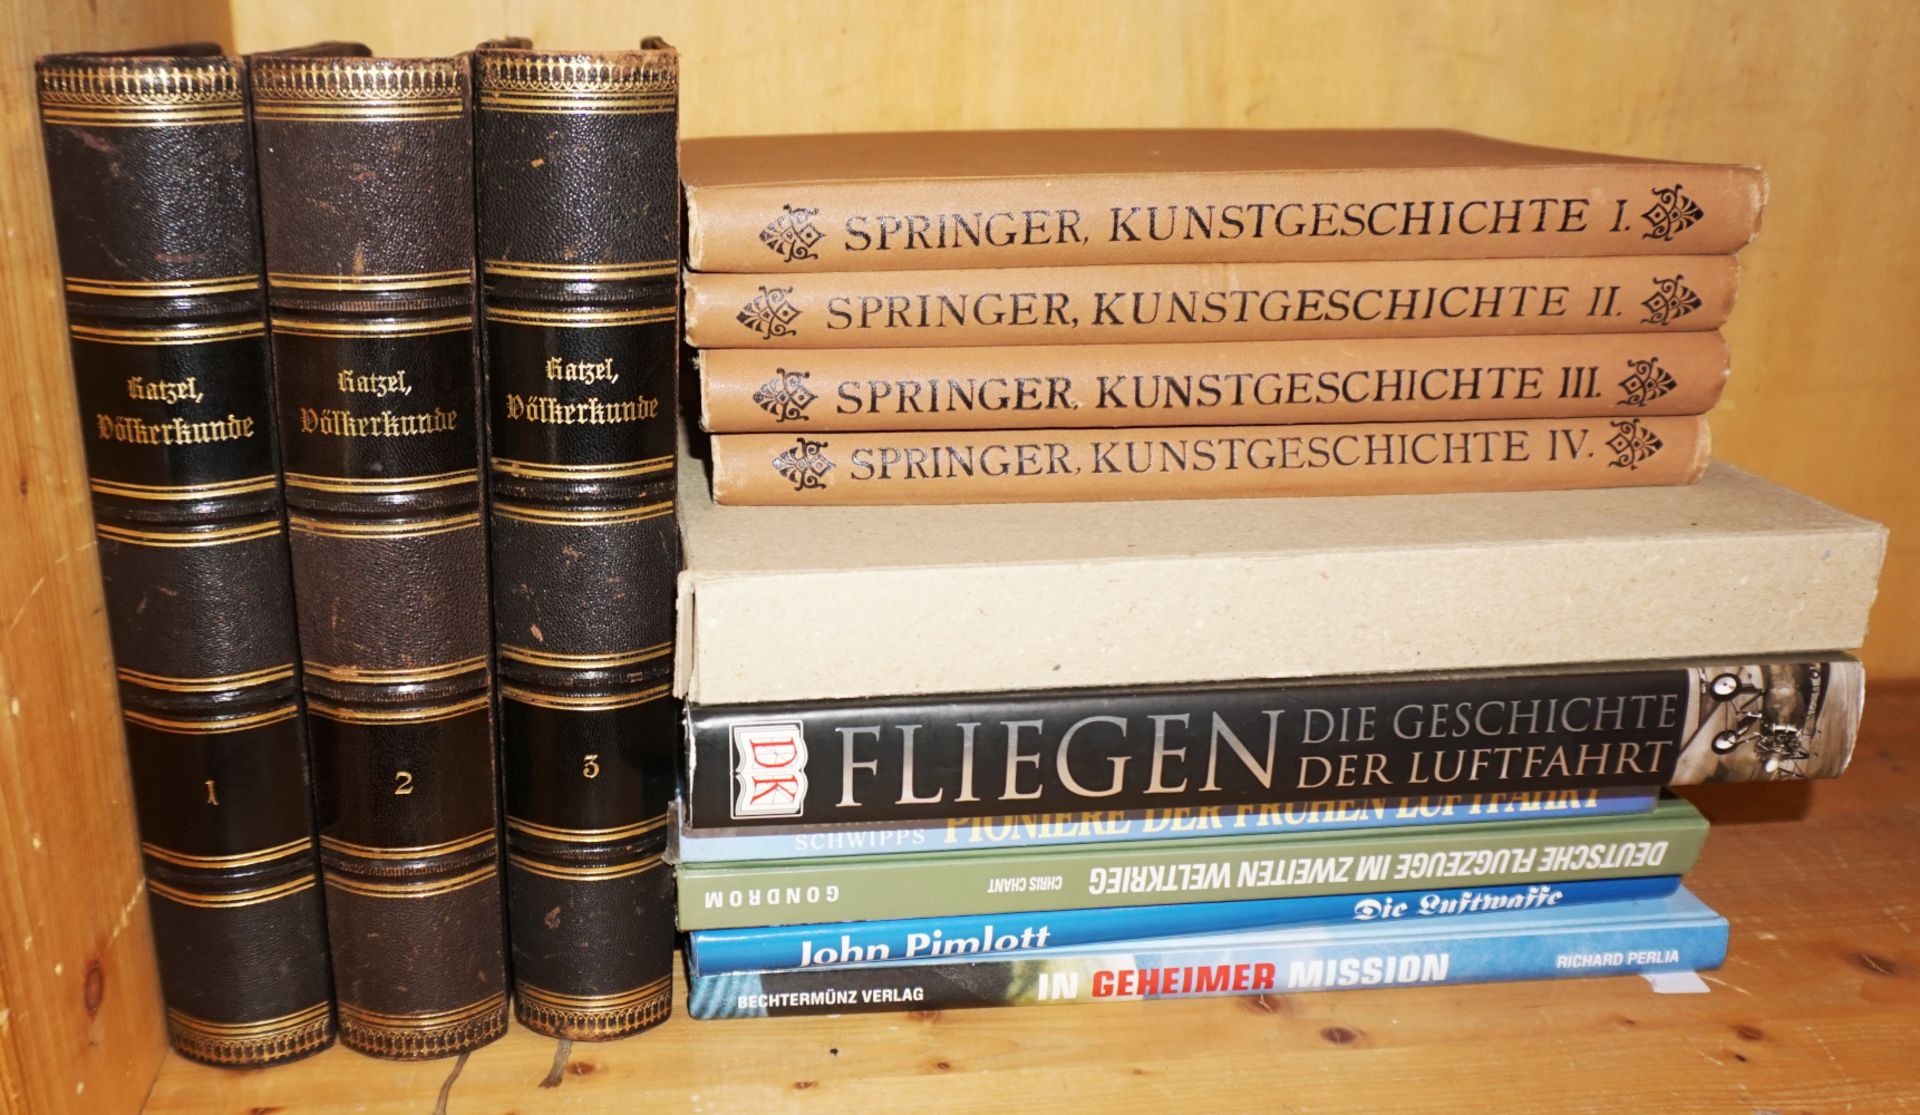 1 kleines Konv. Bücher z.T. 19. Jh./mehrbändig: "Völkerkunde" von Dr. Friedrich HATZEL Leipzig 1887 - Image 2 of 2